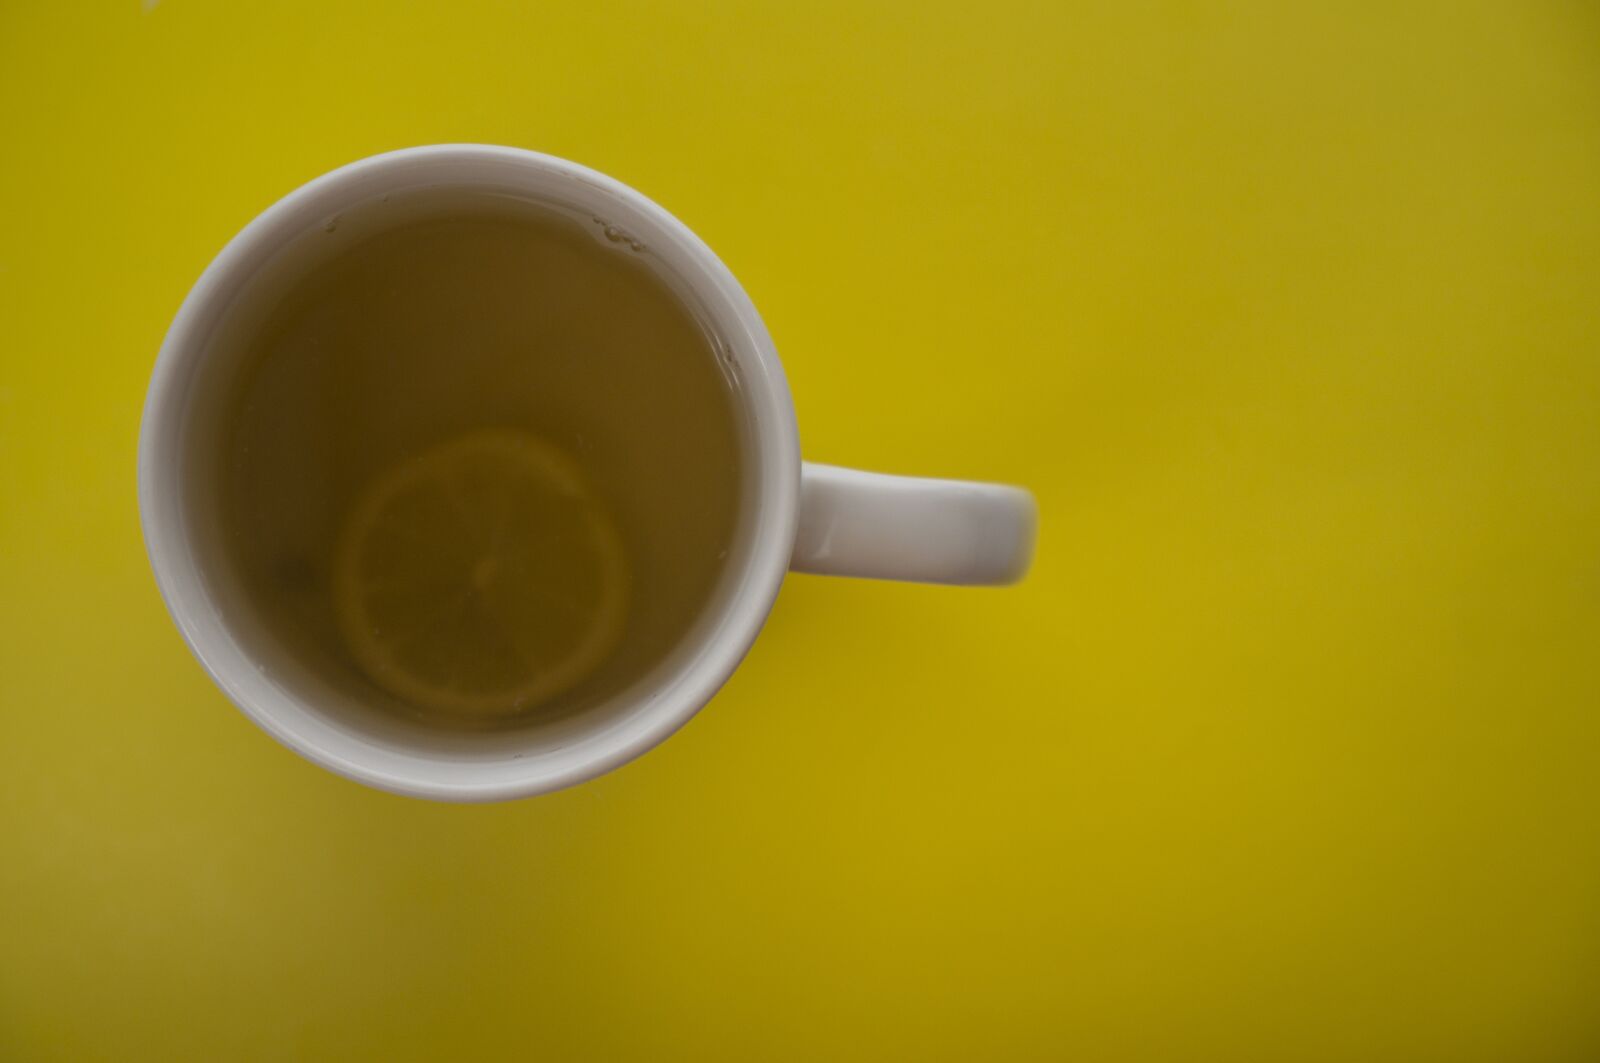 Sony Alpha NEX-5R sample photo. Tea, drink, cup photography